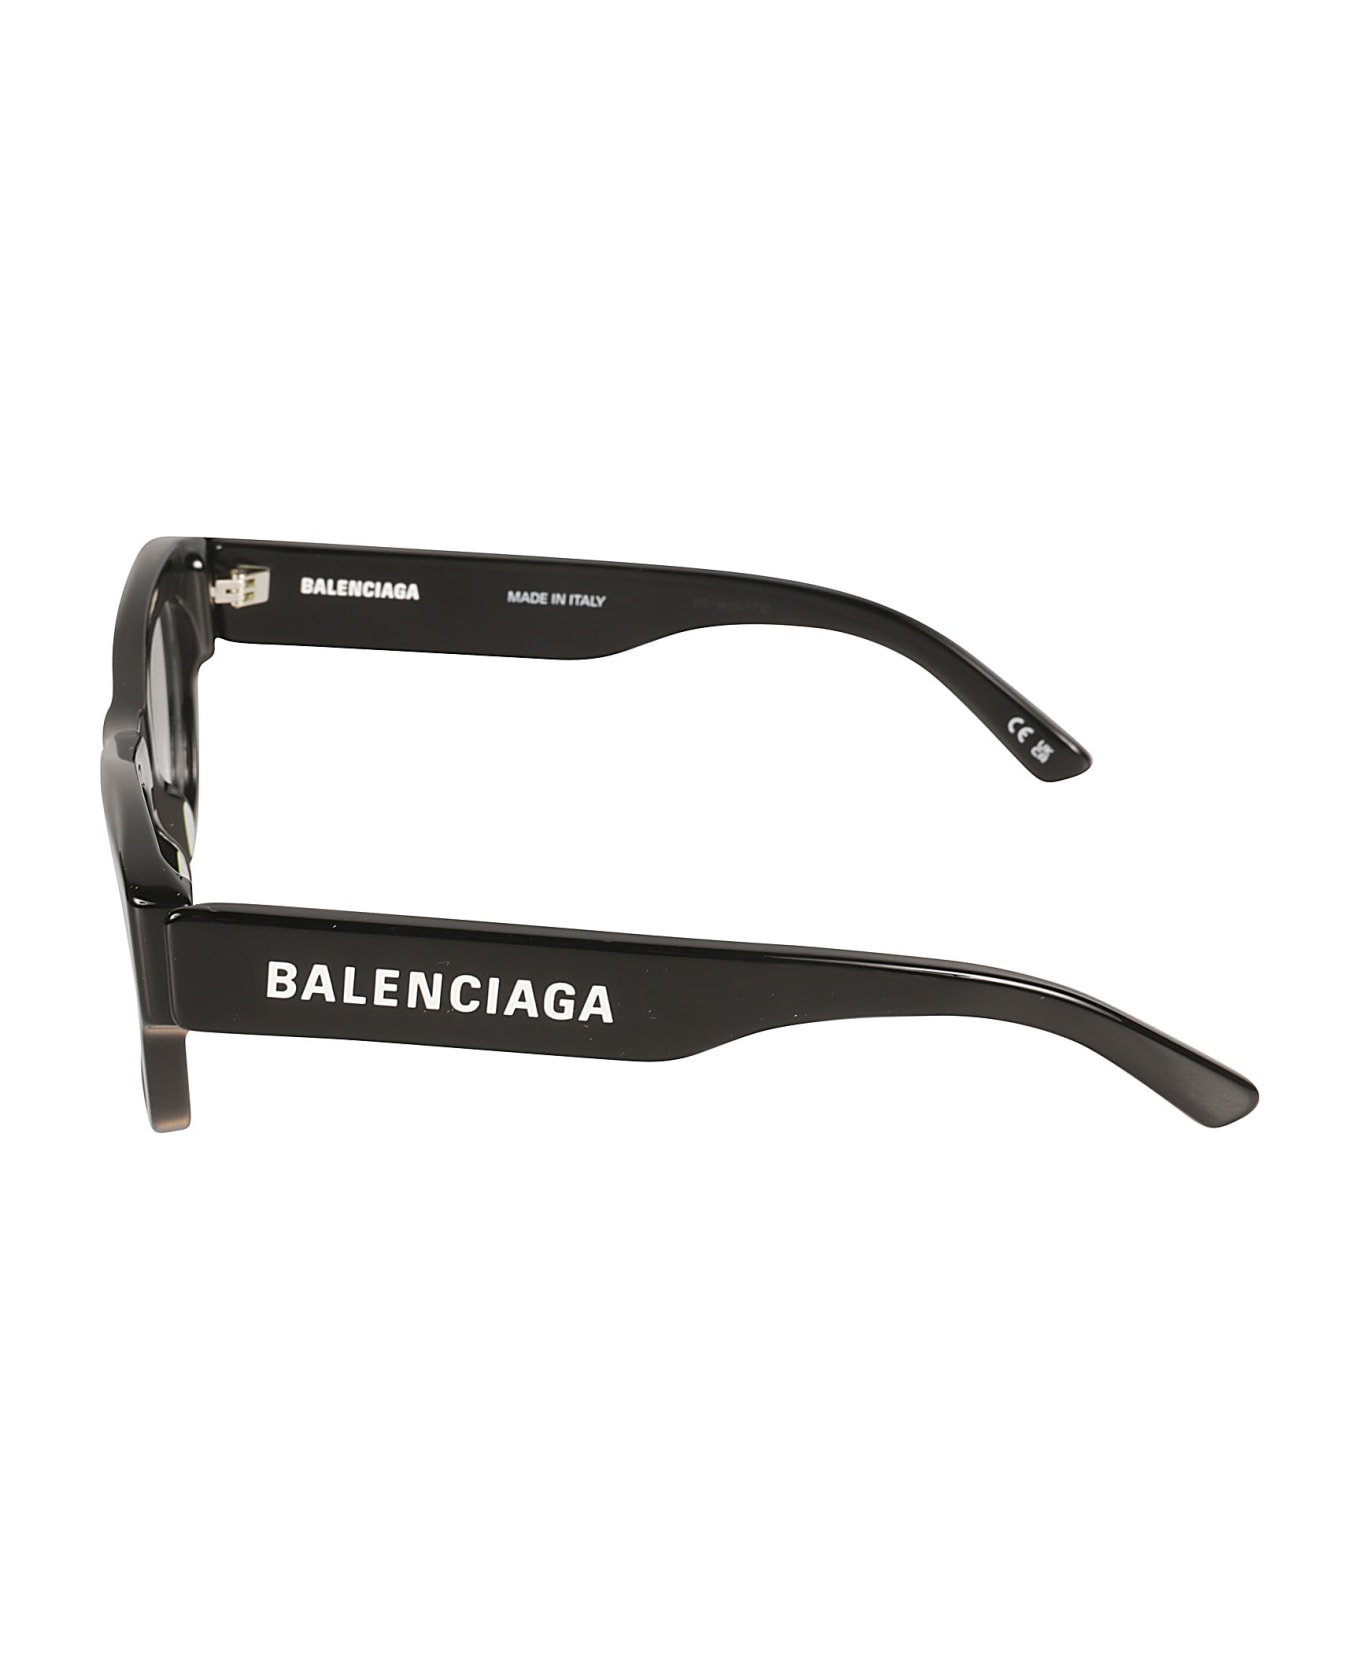 Balenciaga Eyewear Logo Sided Square Frame Glasses - Black/Transparent アイウェア